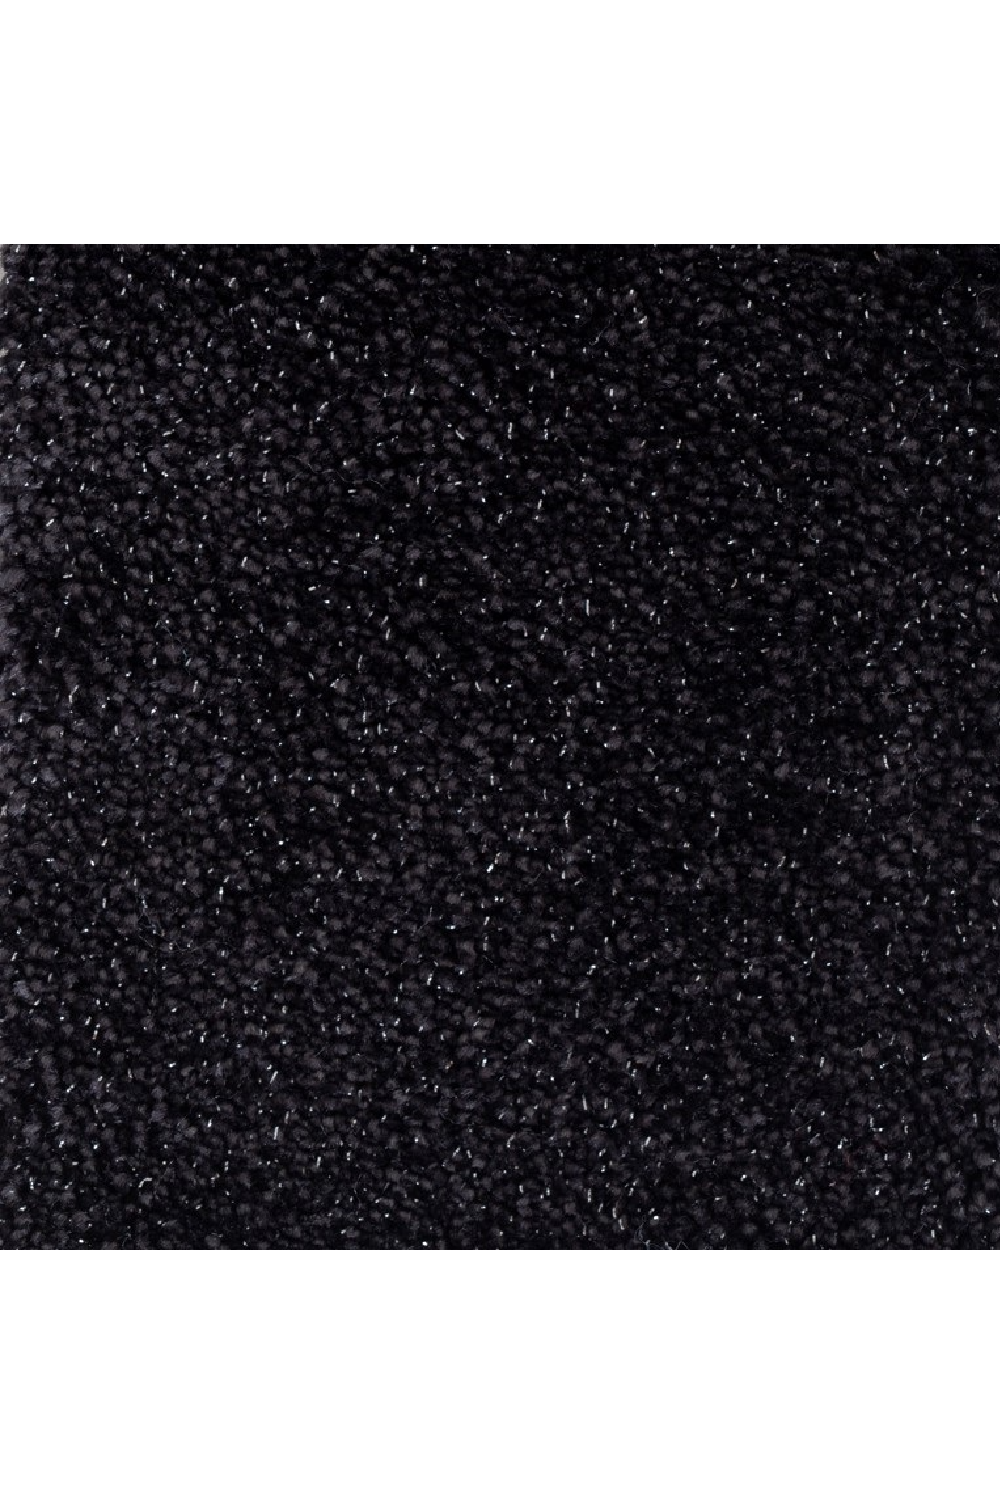 Black Modern Carpet | OROA Charcoal | Oroa.com